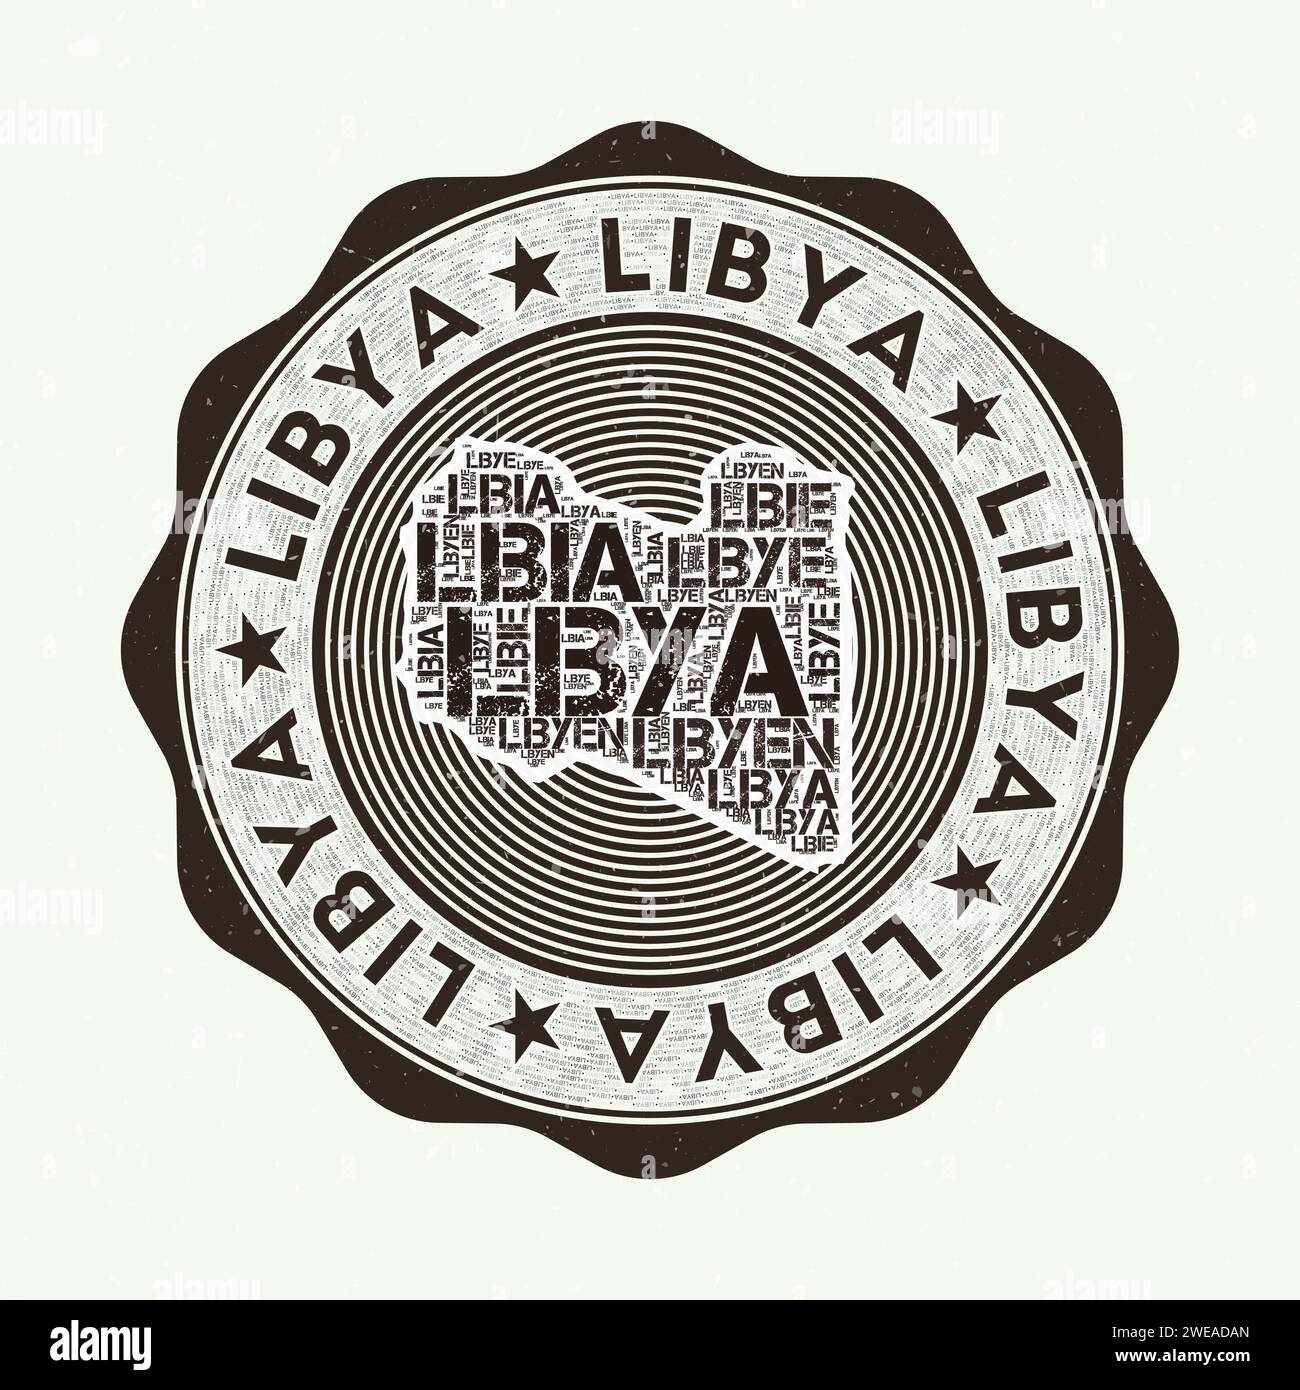 Libye Seal. Logo rond du pays avec la forme de la Libye et le nom du pays en plusieurs langues wordcloud. Emblème étonnant. Illustration vectorielle radiante. Illustration de Vecteur